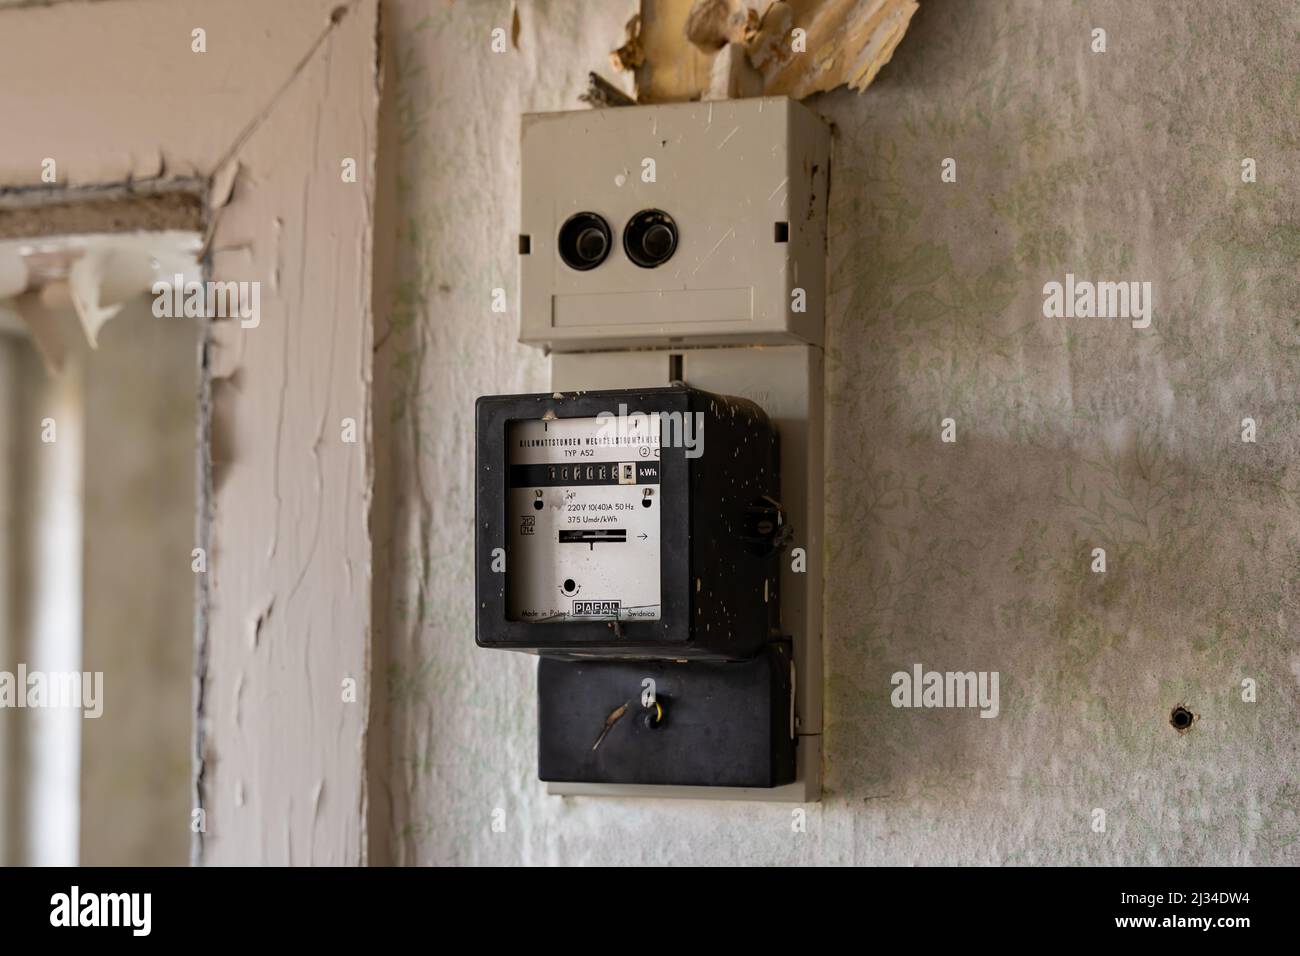 Vecchio contatore elettrico su un muro in un edificio abbandonato. Apparecchiature elettriche per misurare il consumo energetico in un'unica stanza. Carta da parati vecchia vintage Foto Stock